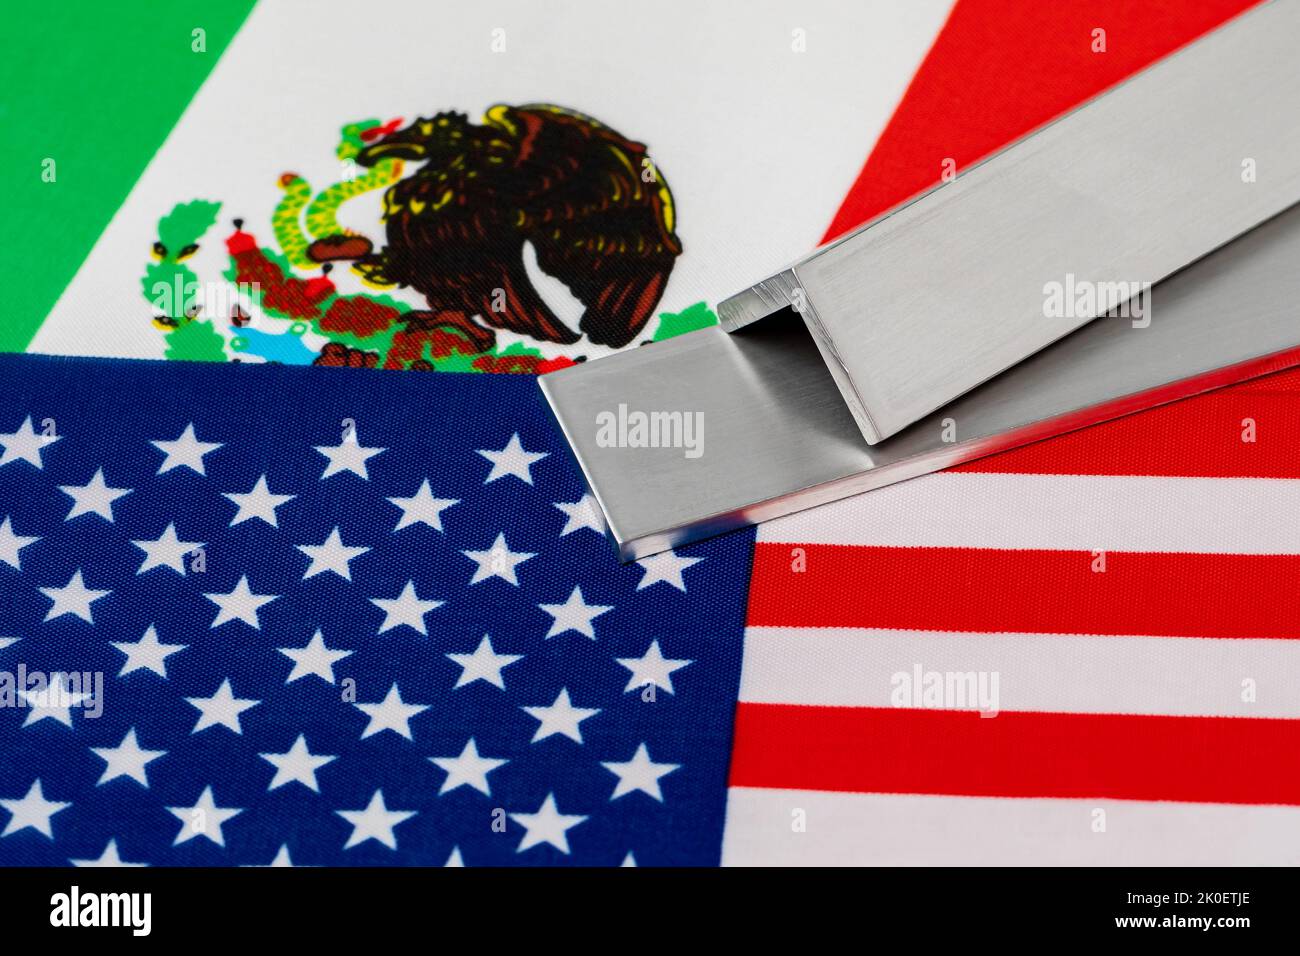 Stock di alluminio metallico sulle bandiere del Messico e degli Stati Uniti d'America. Concetto di guerra commerciale, tariffe, commercio equo e industria siderurgica. Foto Stock